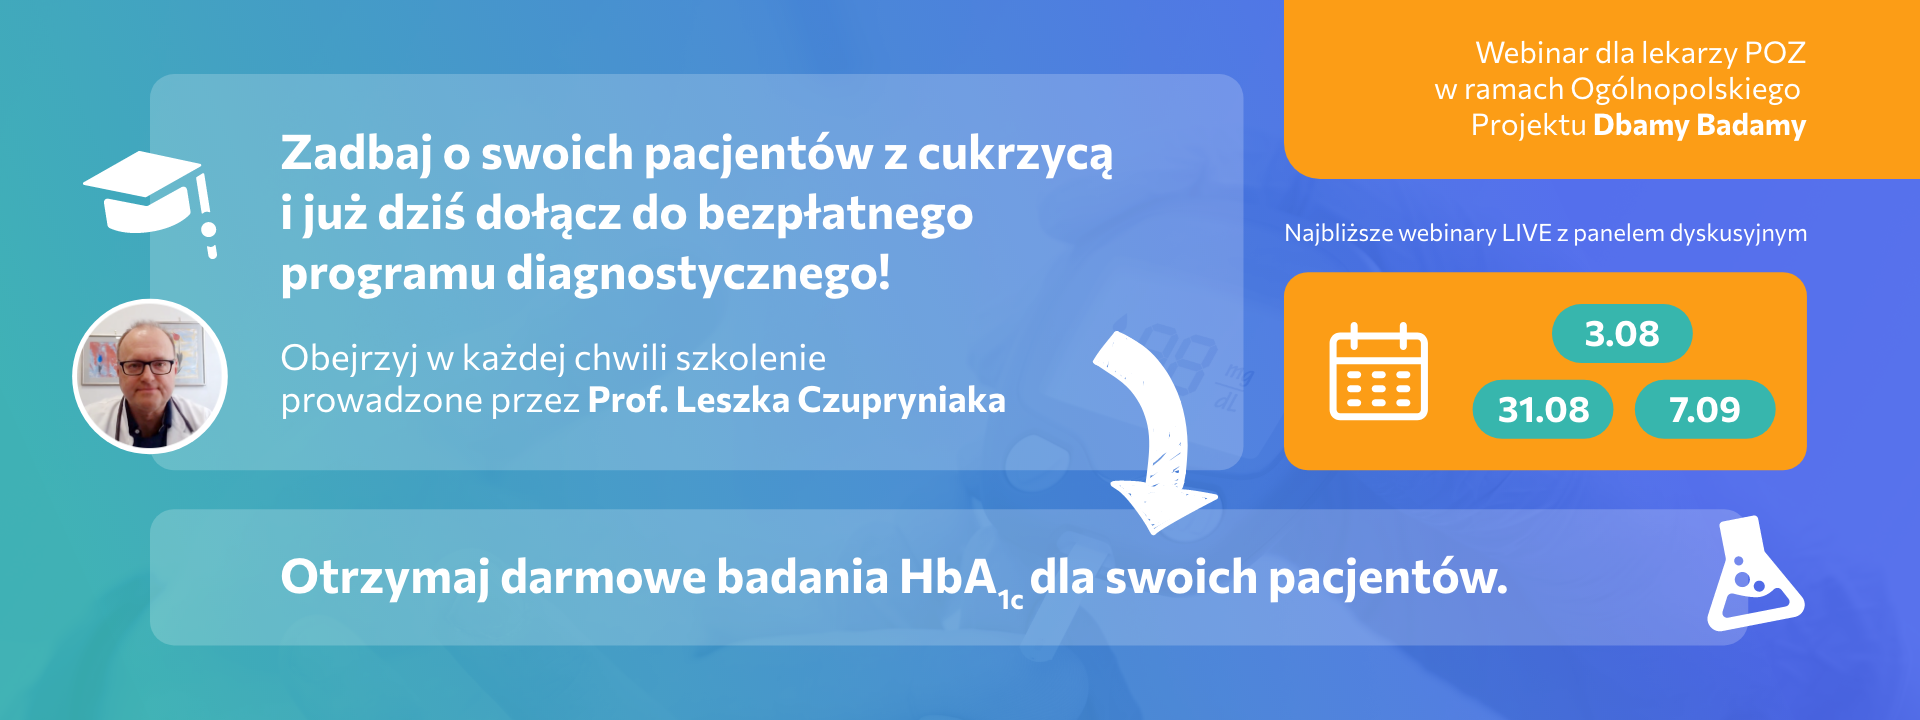 Zarejestruj się na stronie www.dbamybadamy.pl, uzyskaj pakiet darmowych badań HbA1c dla swoich pacjentów! Zachęcamy również do obejrzenia webinaru z Prof. Leszkiem Czupryniakiem!